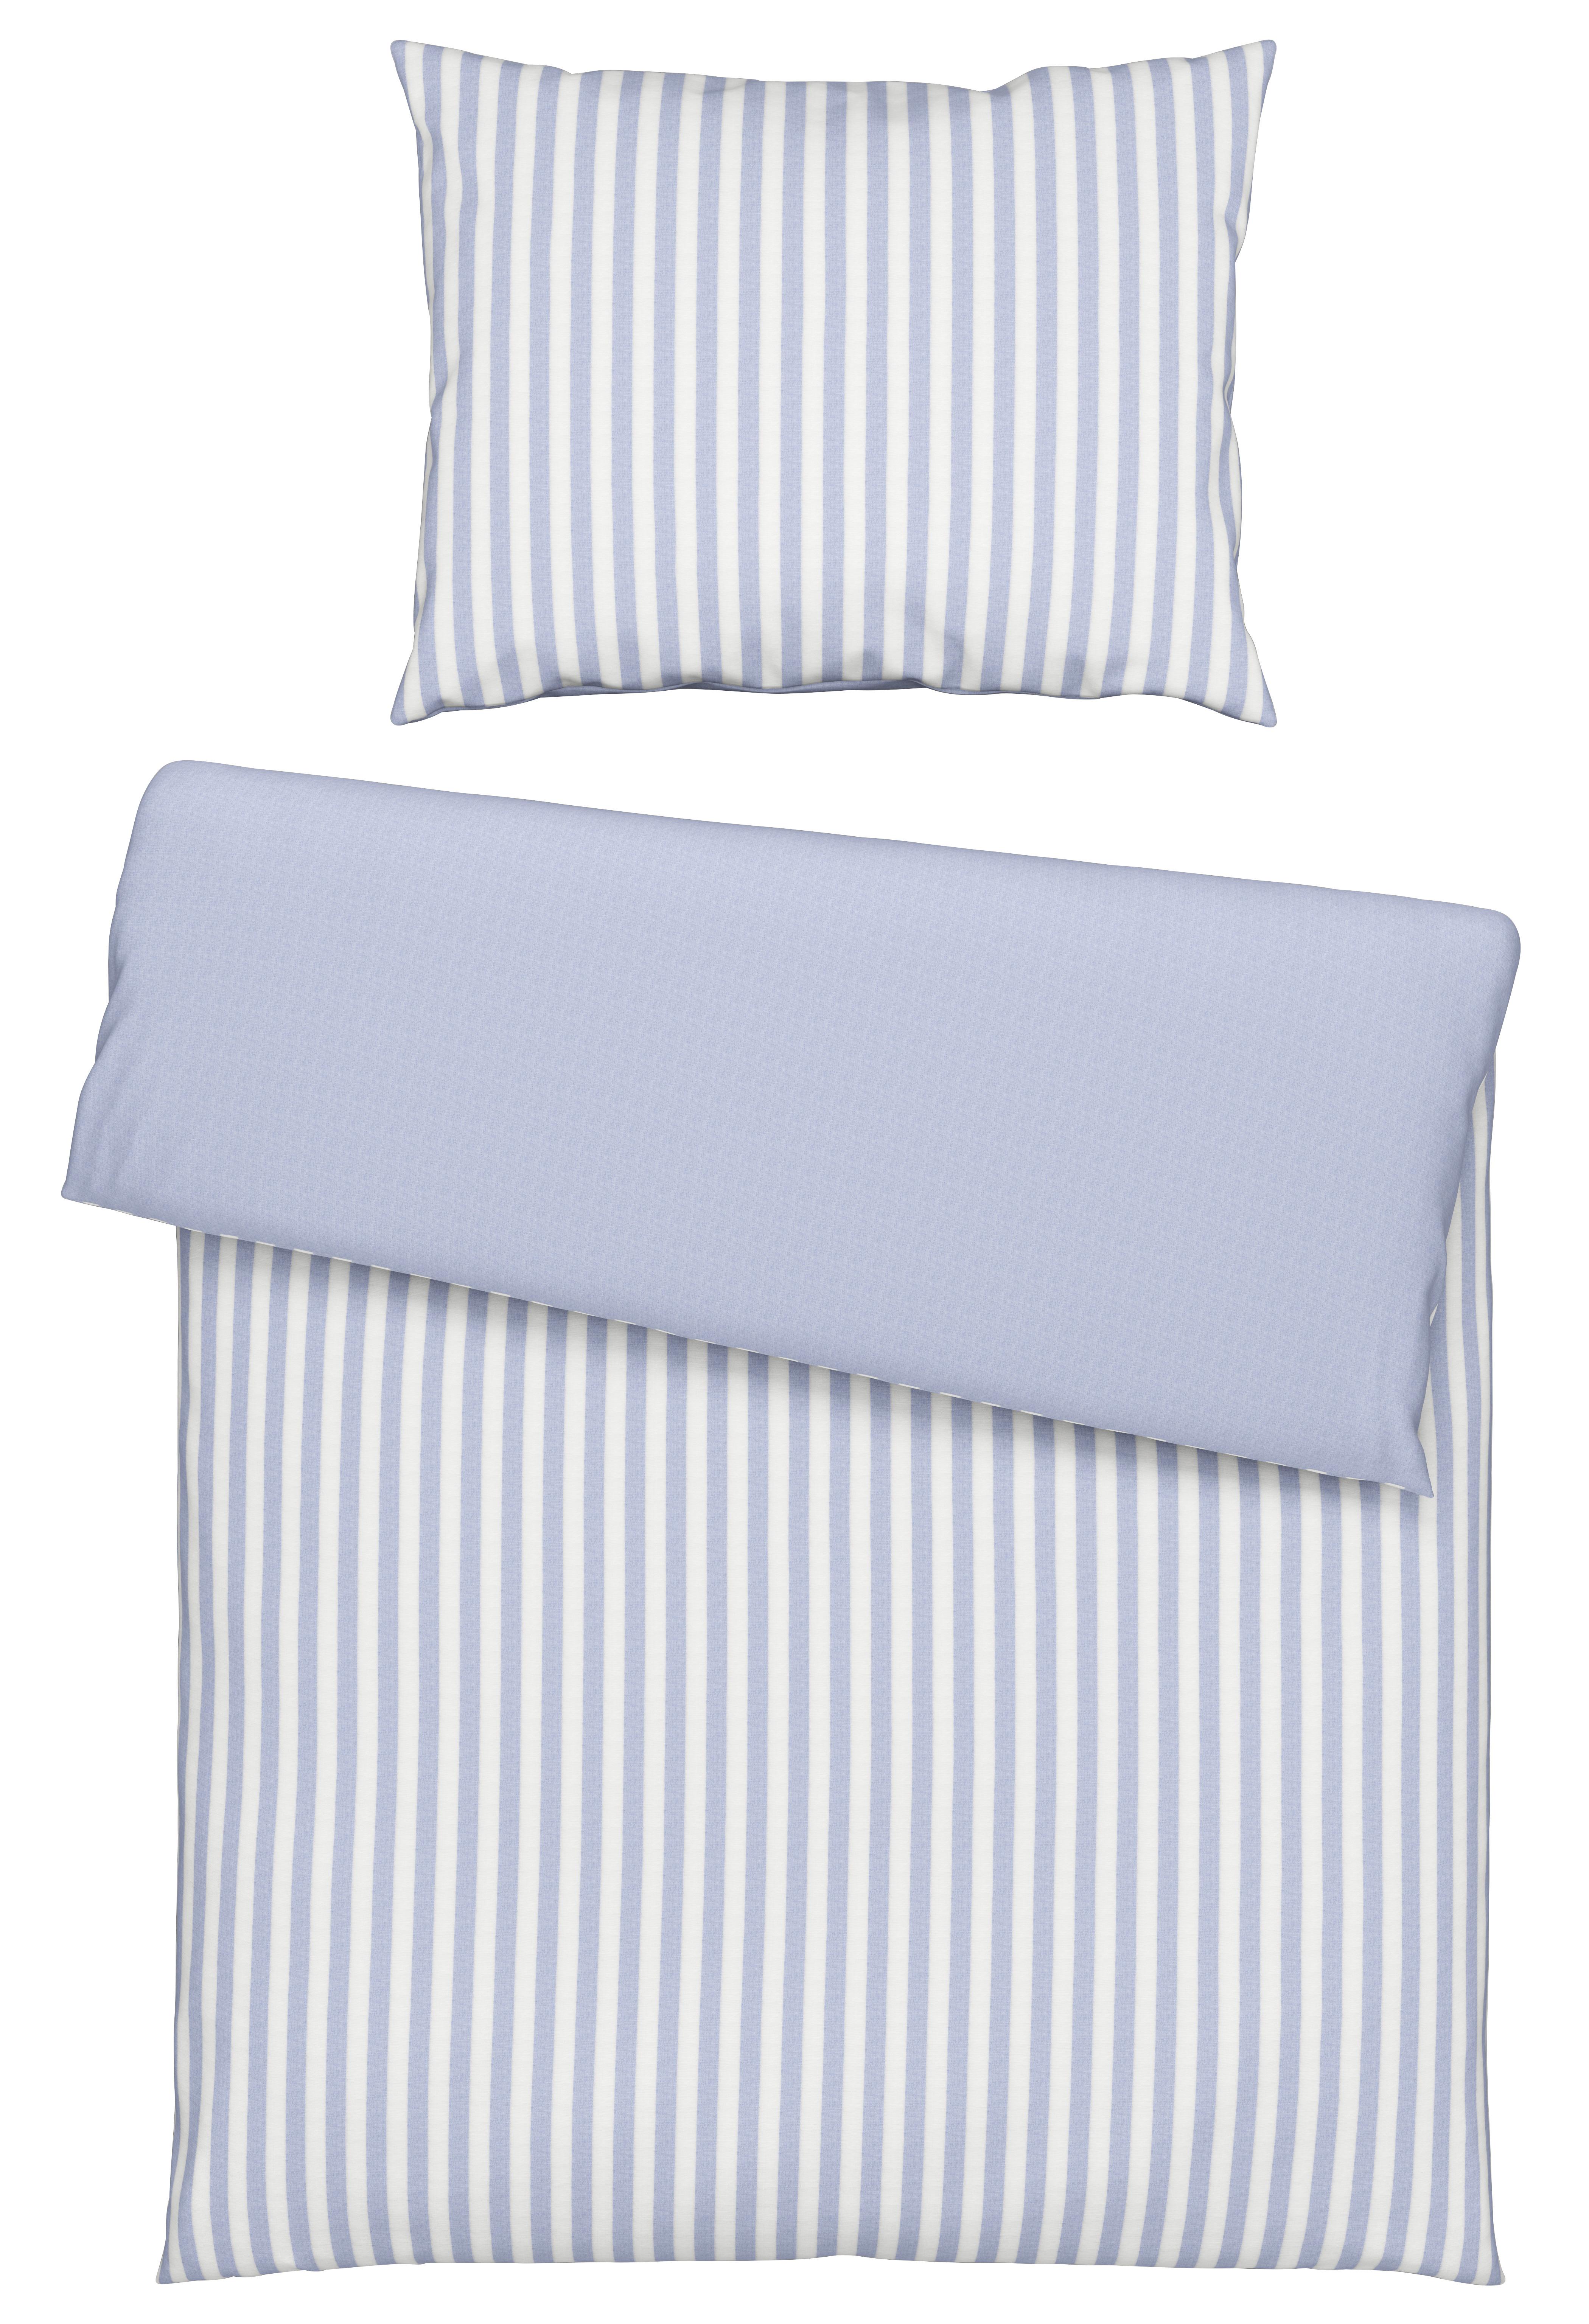 Lenjerie de pat Hampton Wende - albastru, textil (140/200cm) - Premium Living